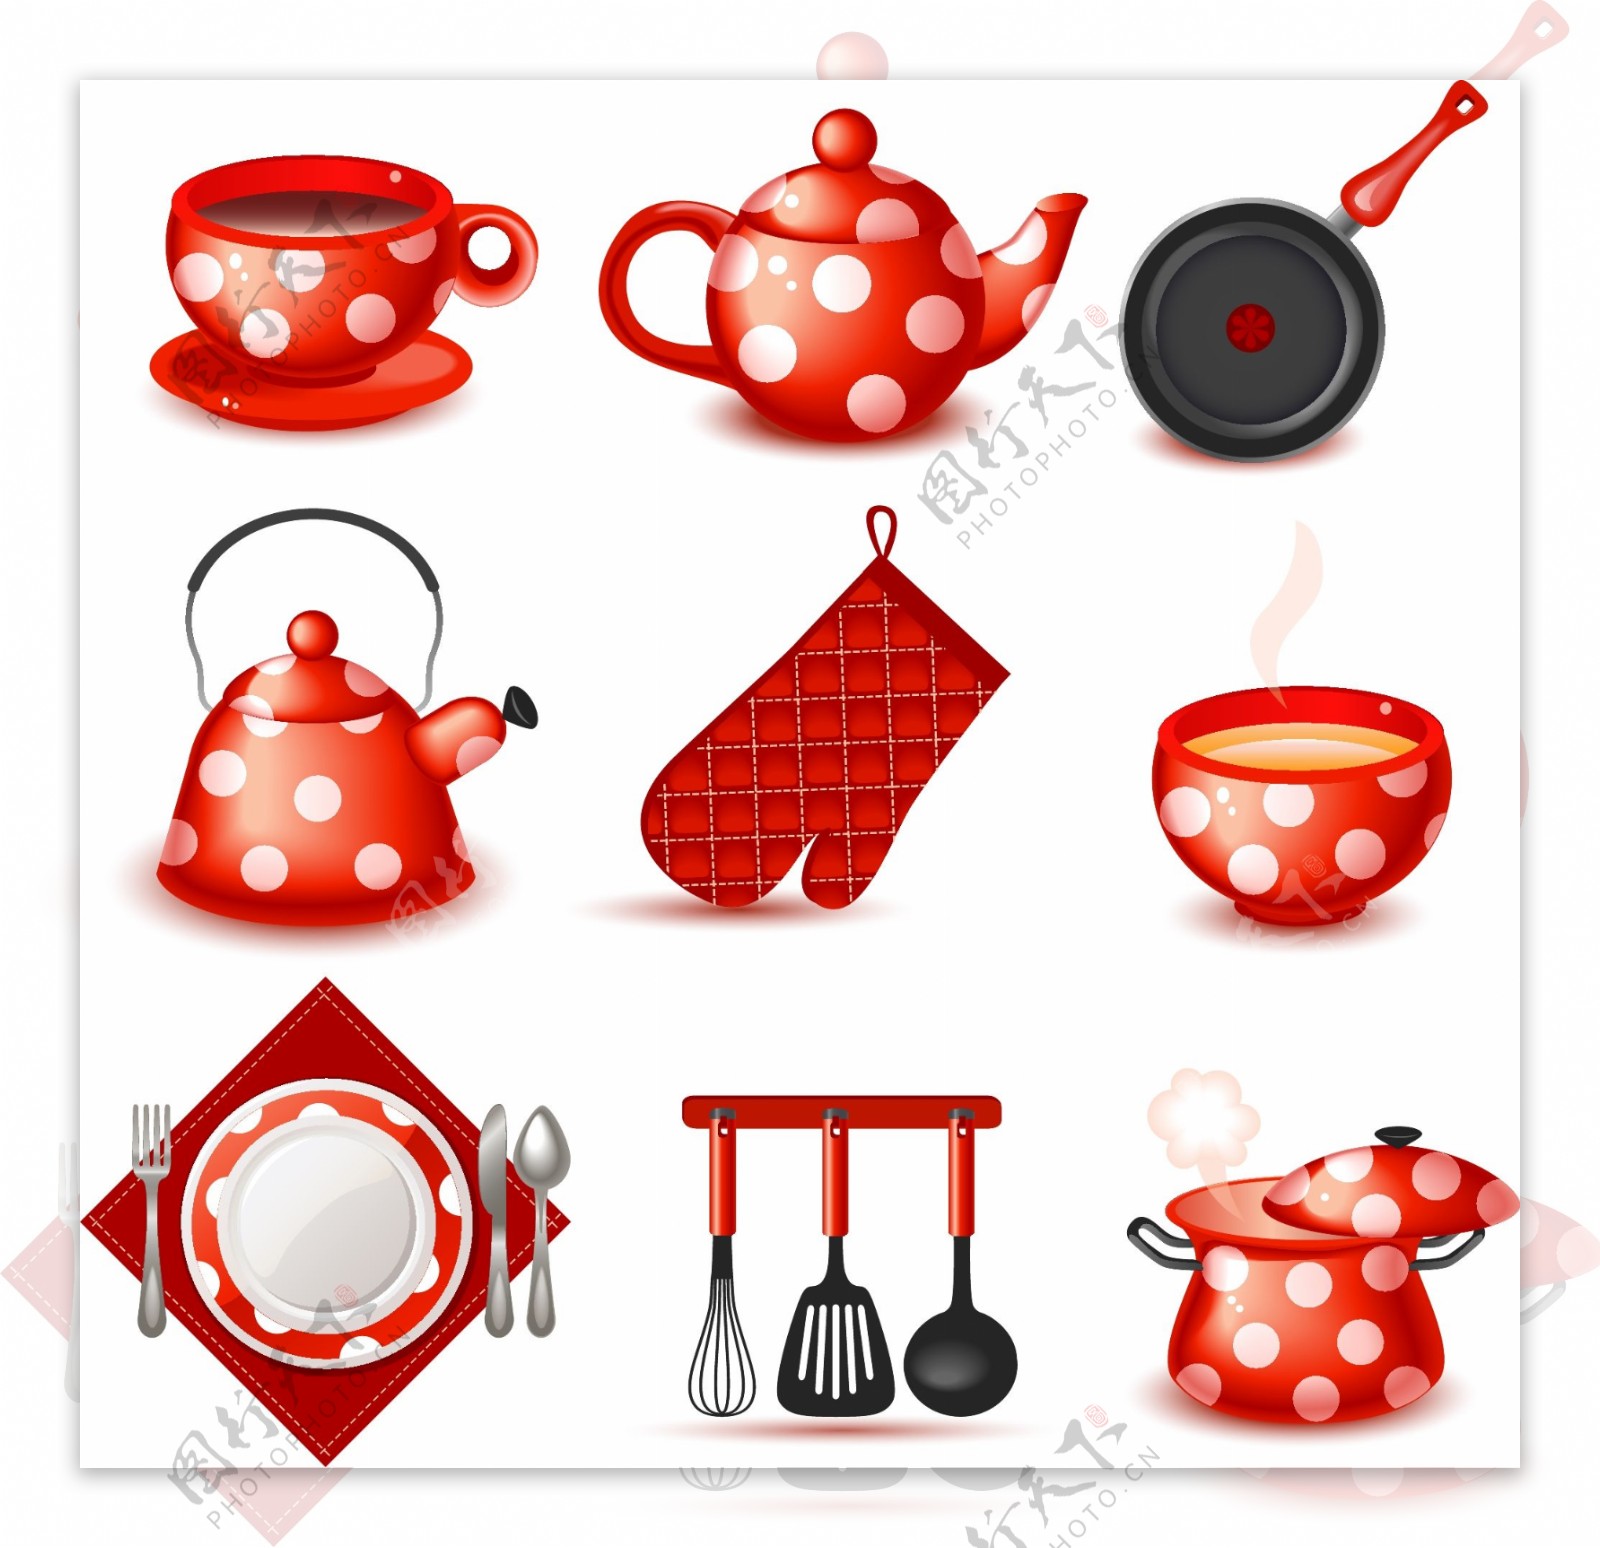 可爱厨具餐具茶具设计矢量素材